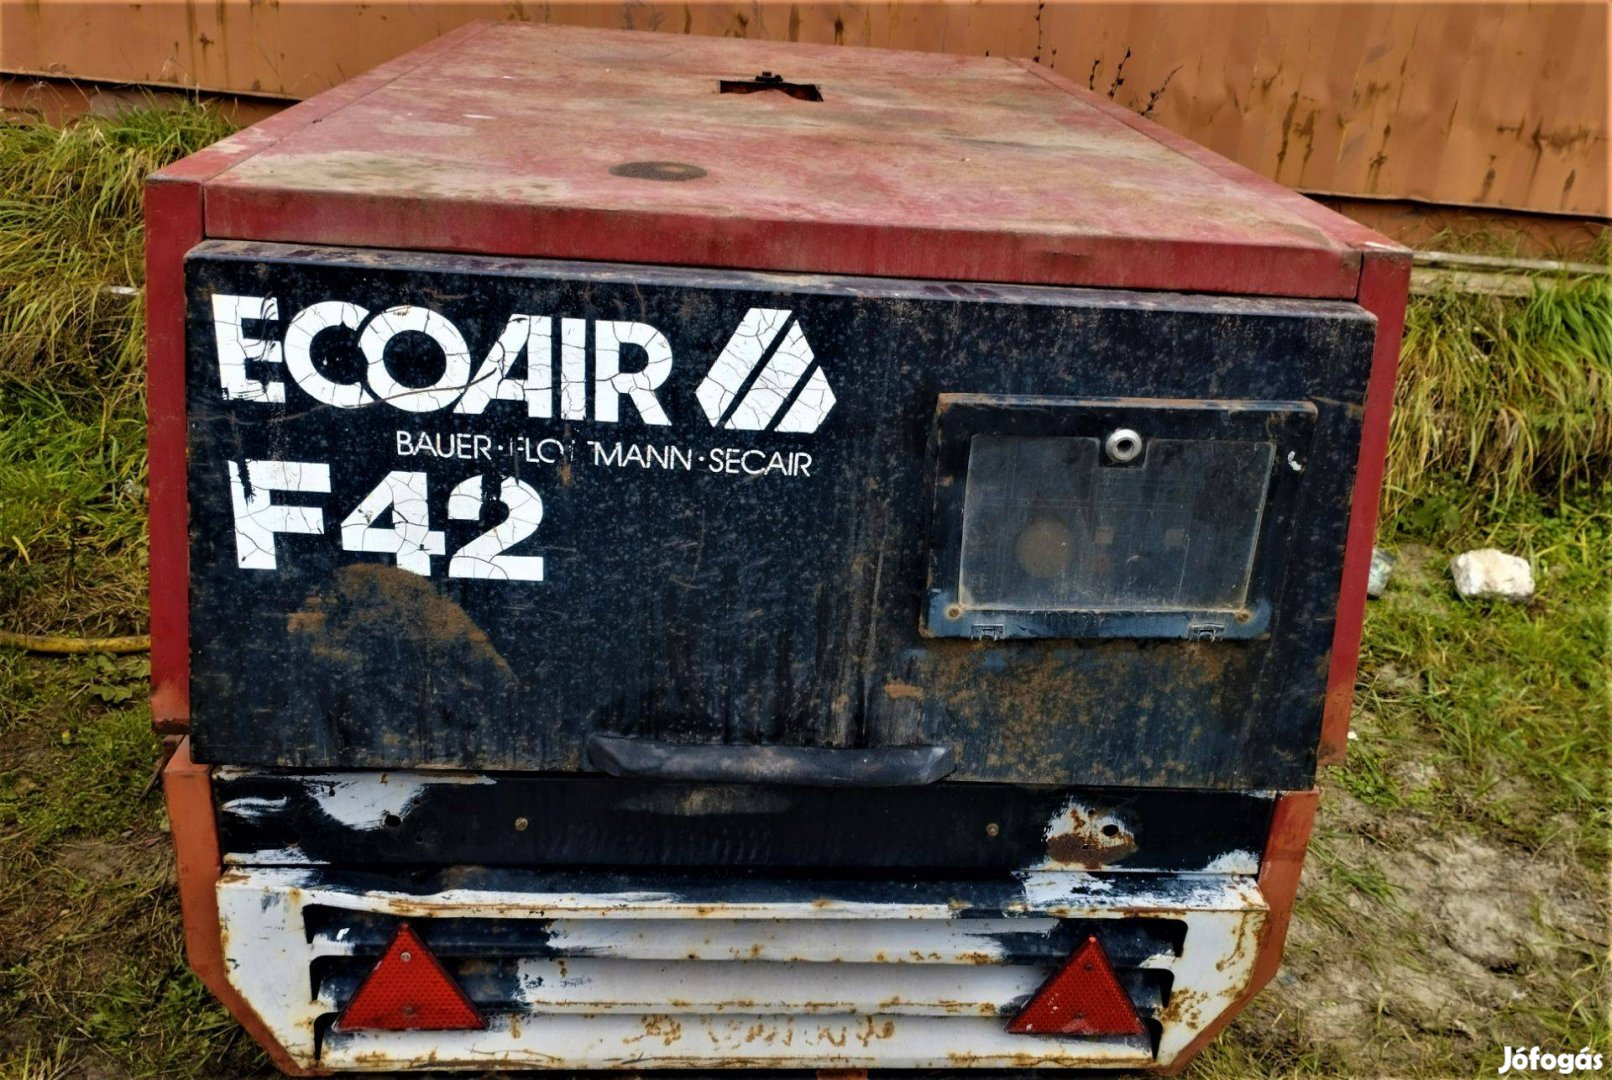 Ecoair F42 csavarkompresszor kompresszor traktorra függeszthető